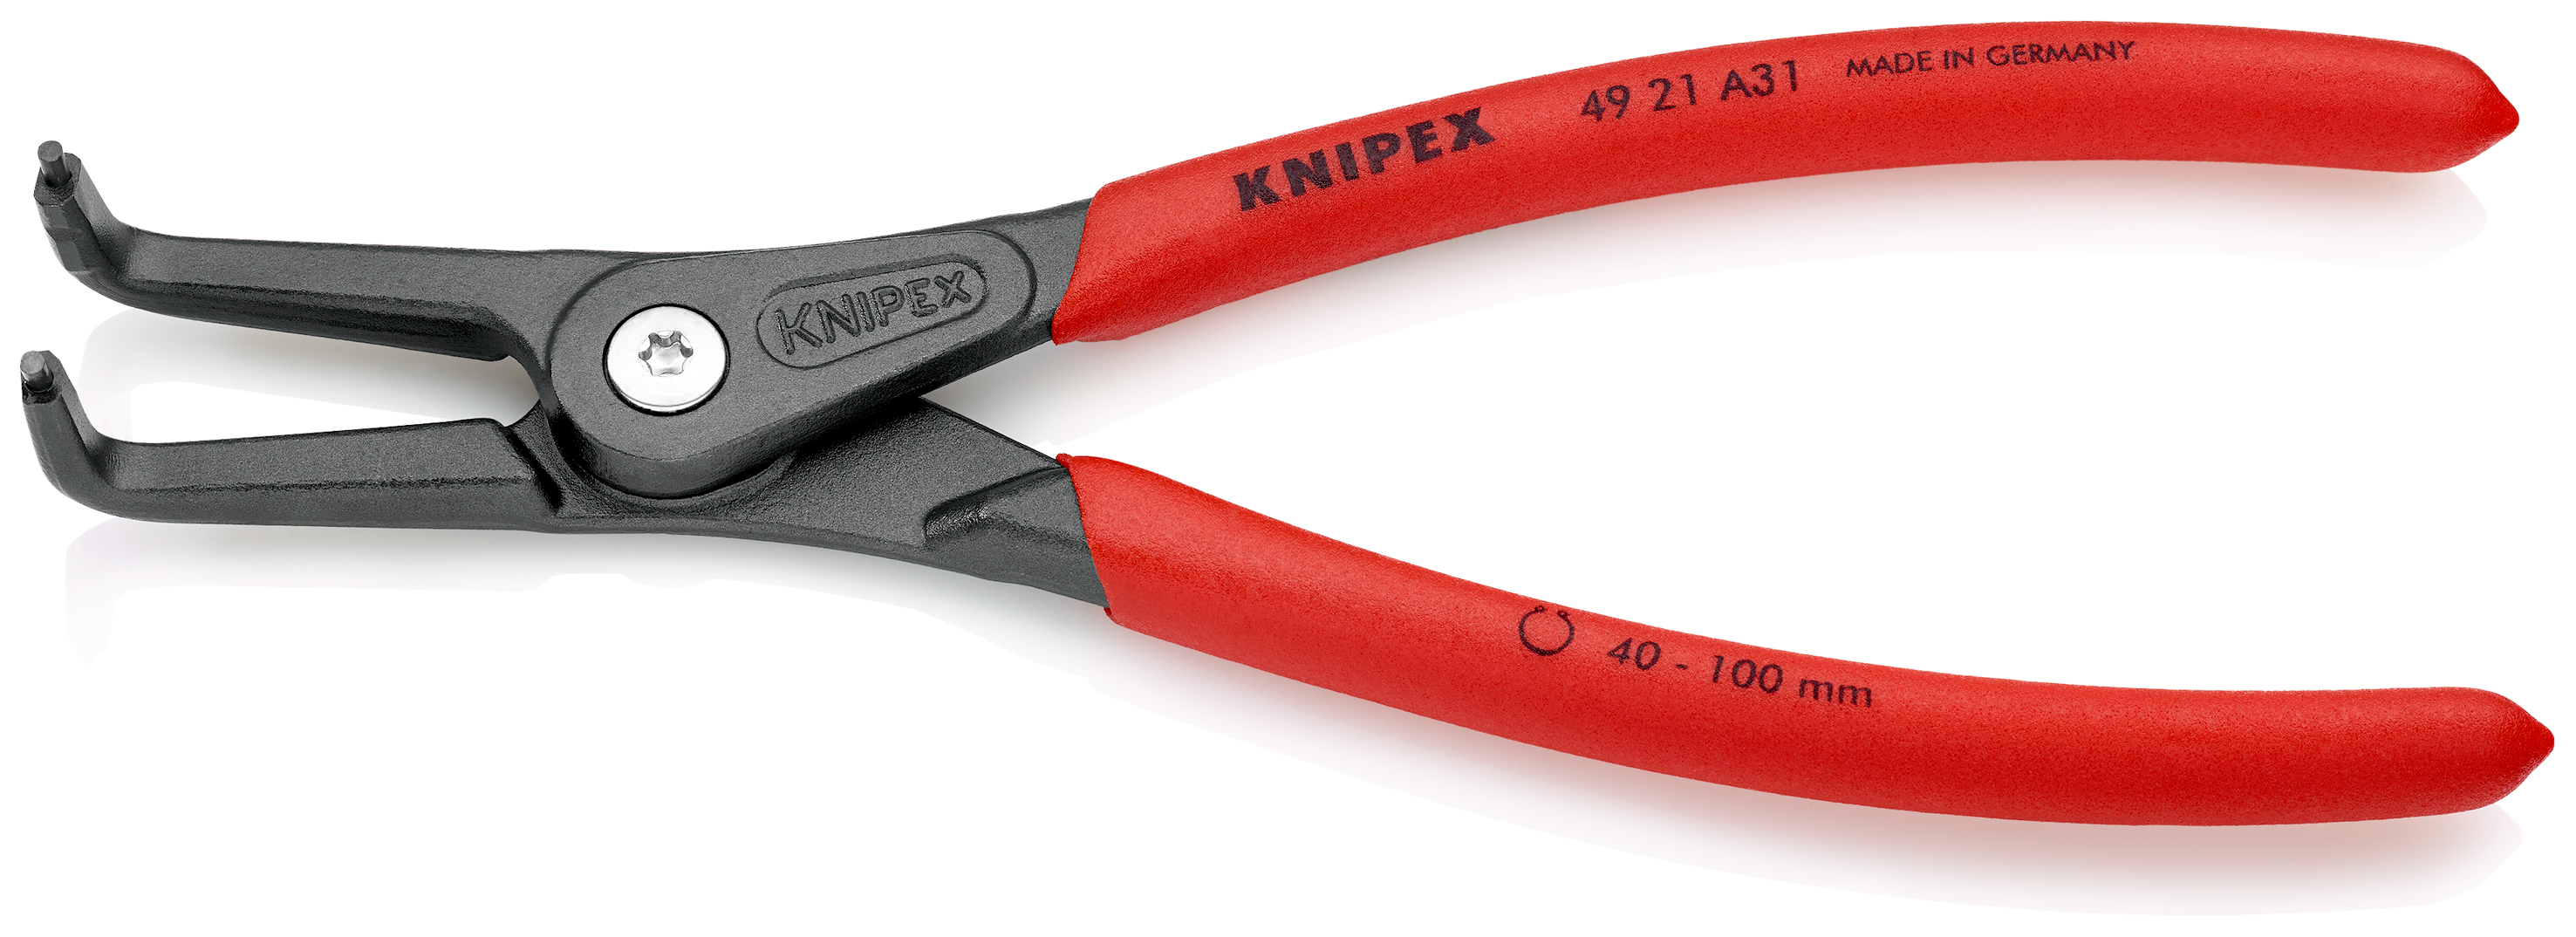 Knipex 4921A31 Cleste pentru inele de siguranță de interior, lungime 210 mm